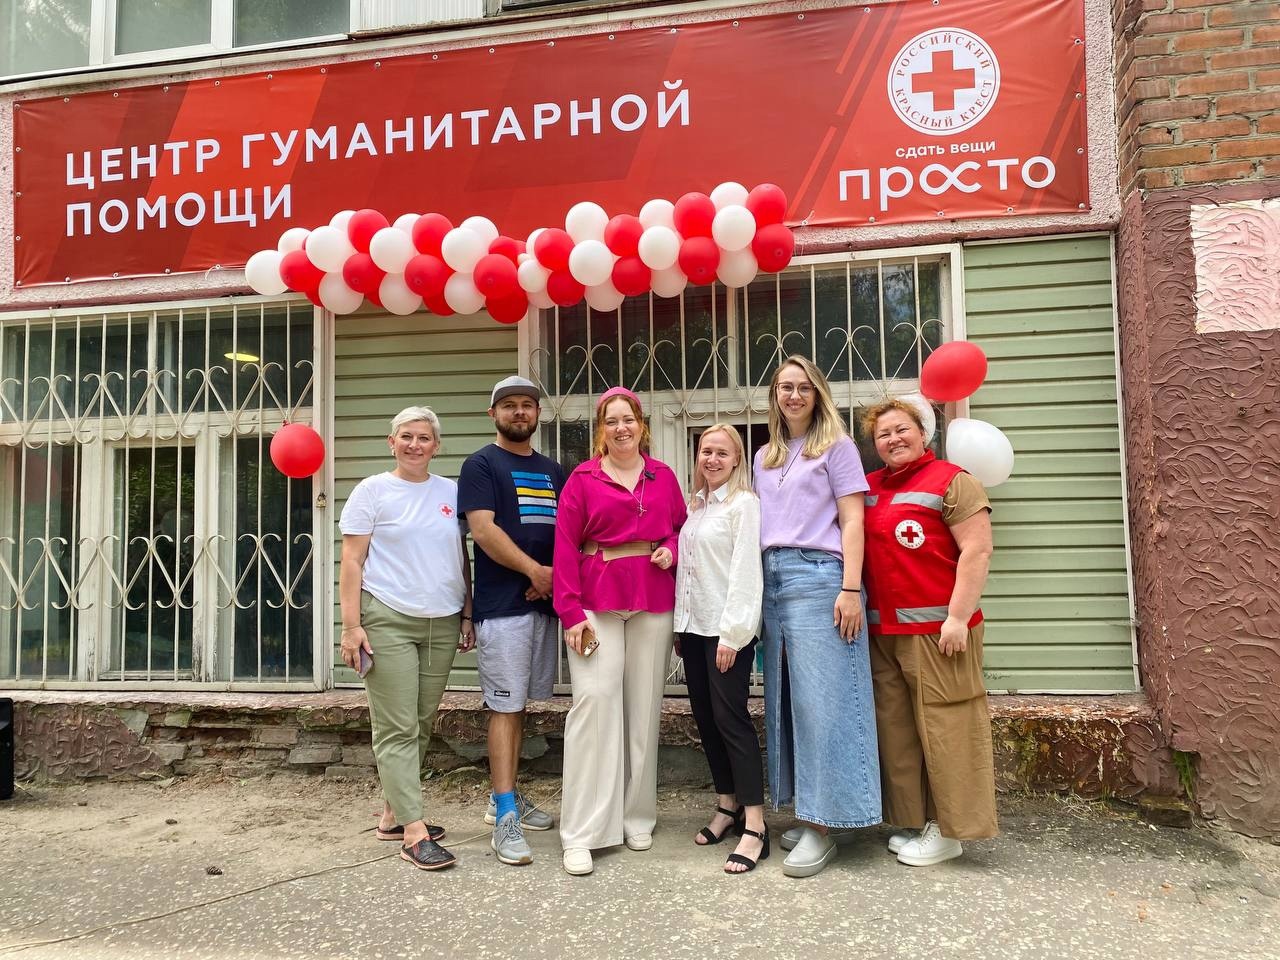 Во Владимире открыли гуманитарный центр помощи для людей, находящихся в сложной жизненной ситуации